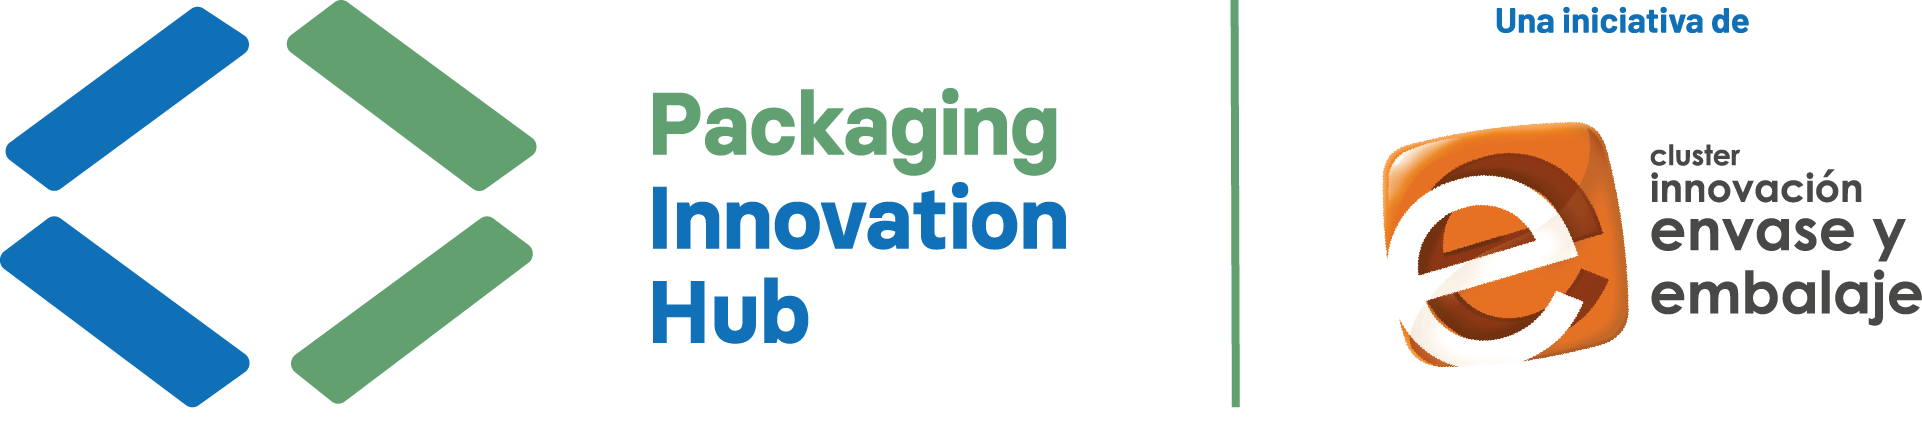 Packaging Innovation Hub